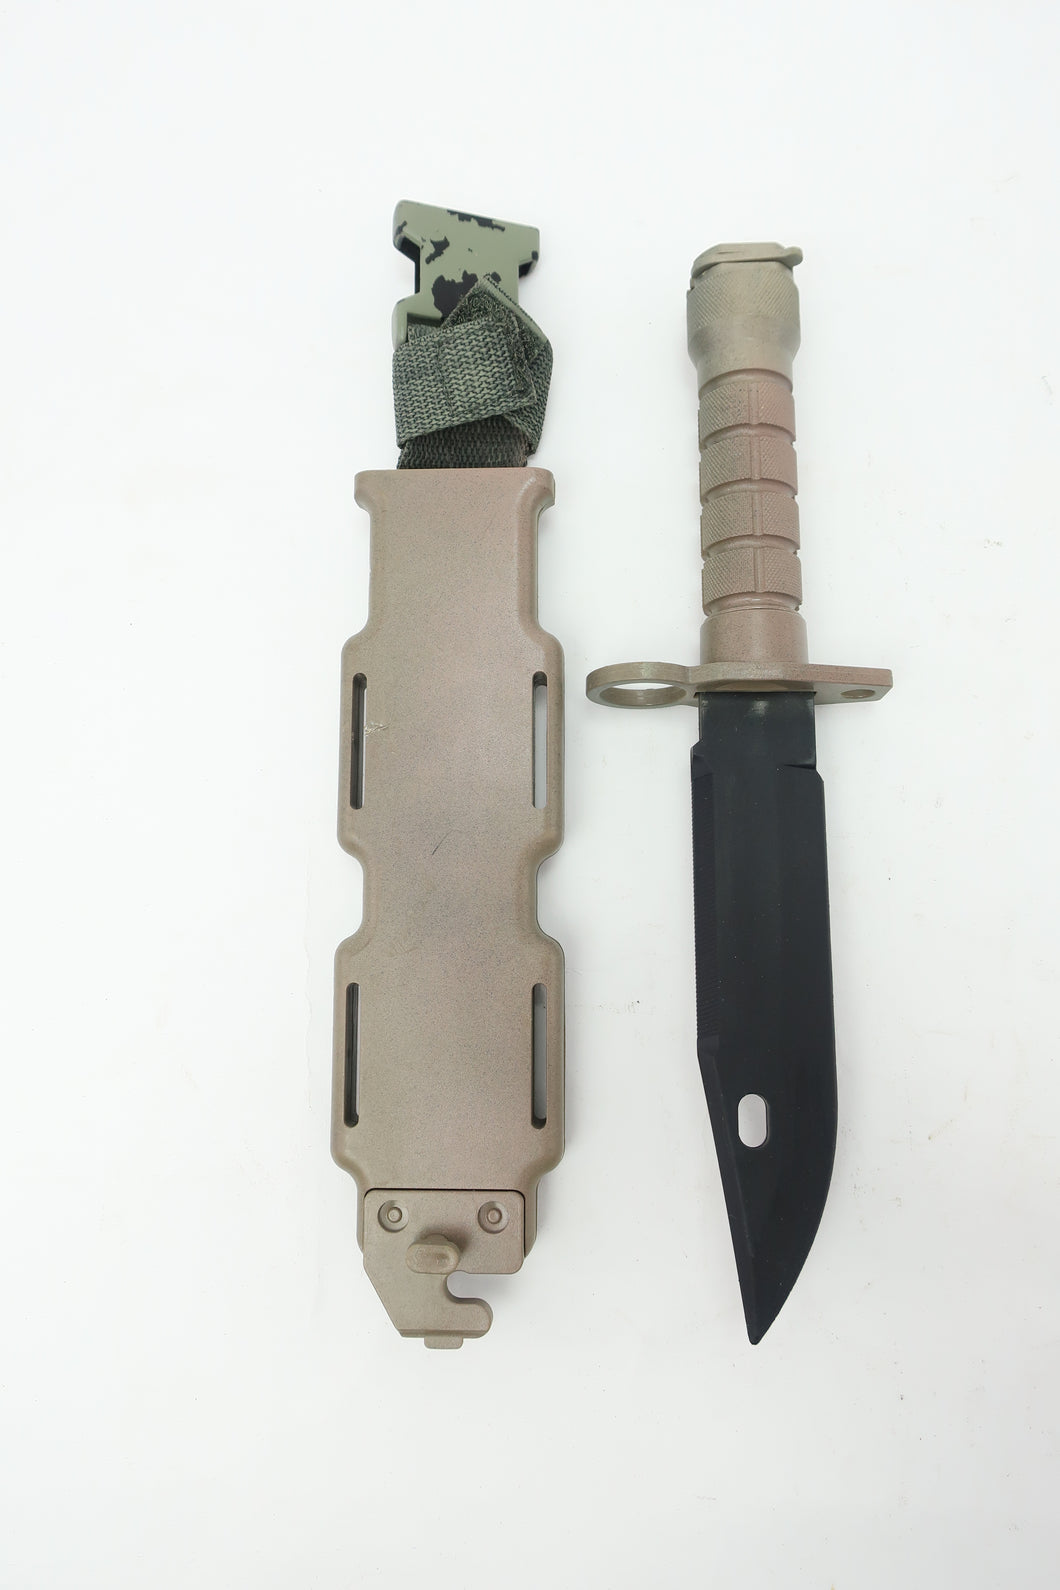 Knife 35